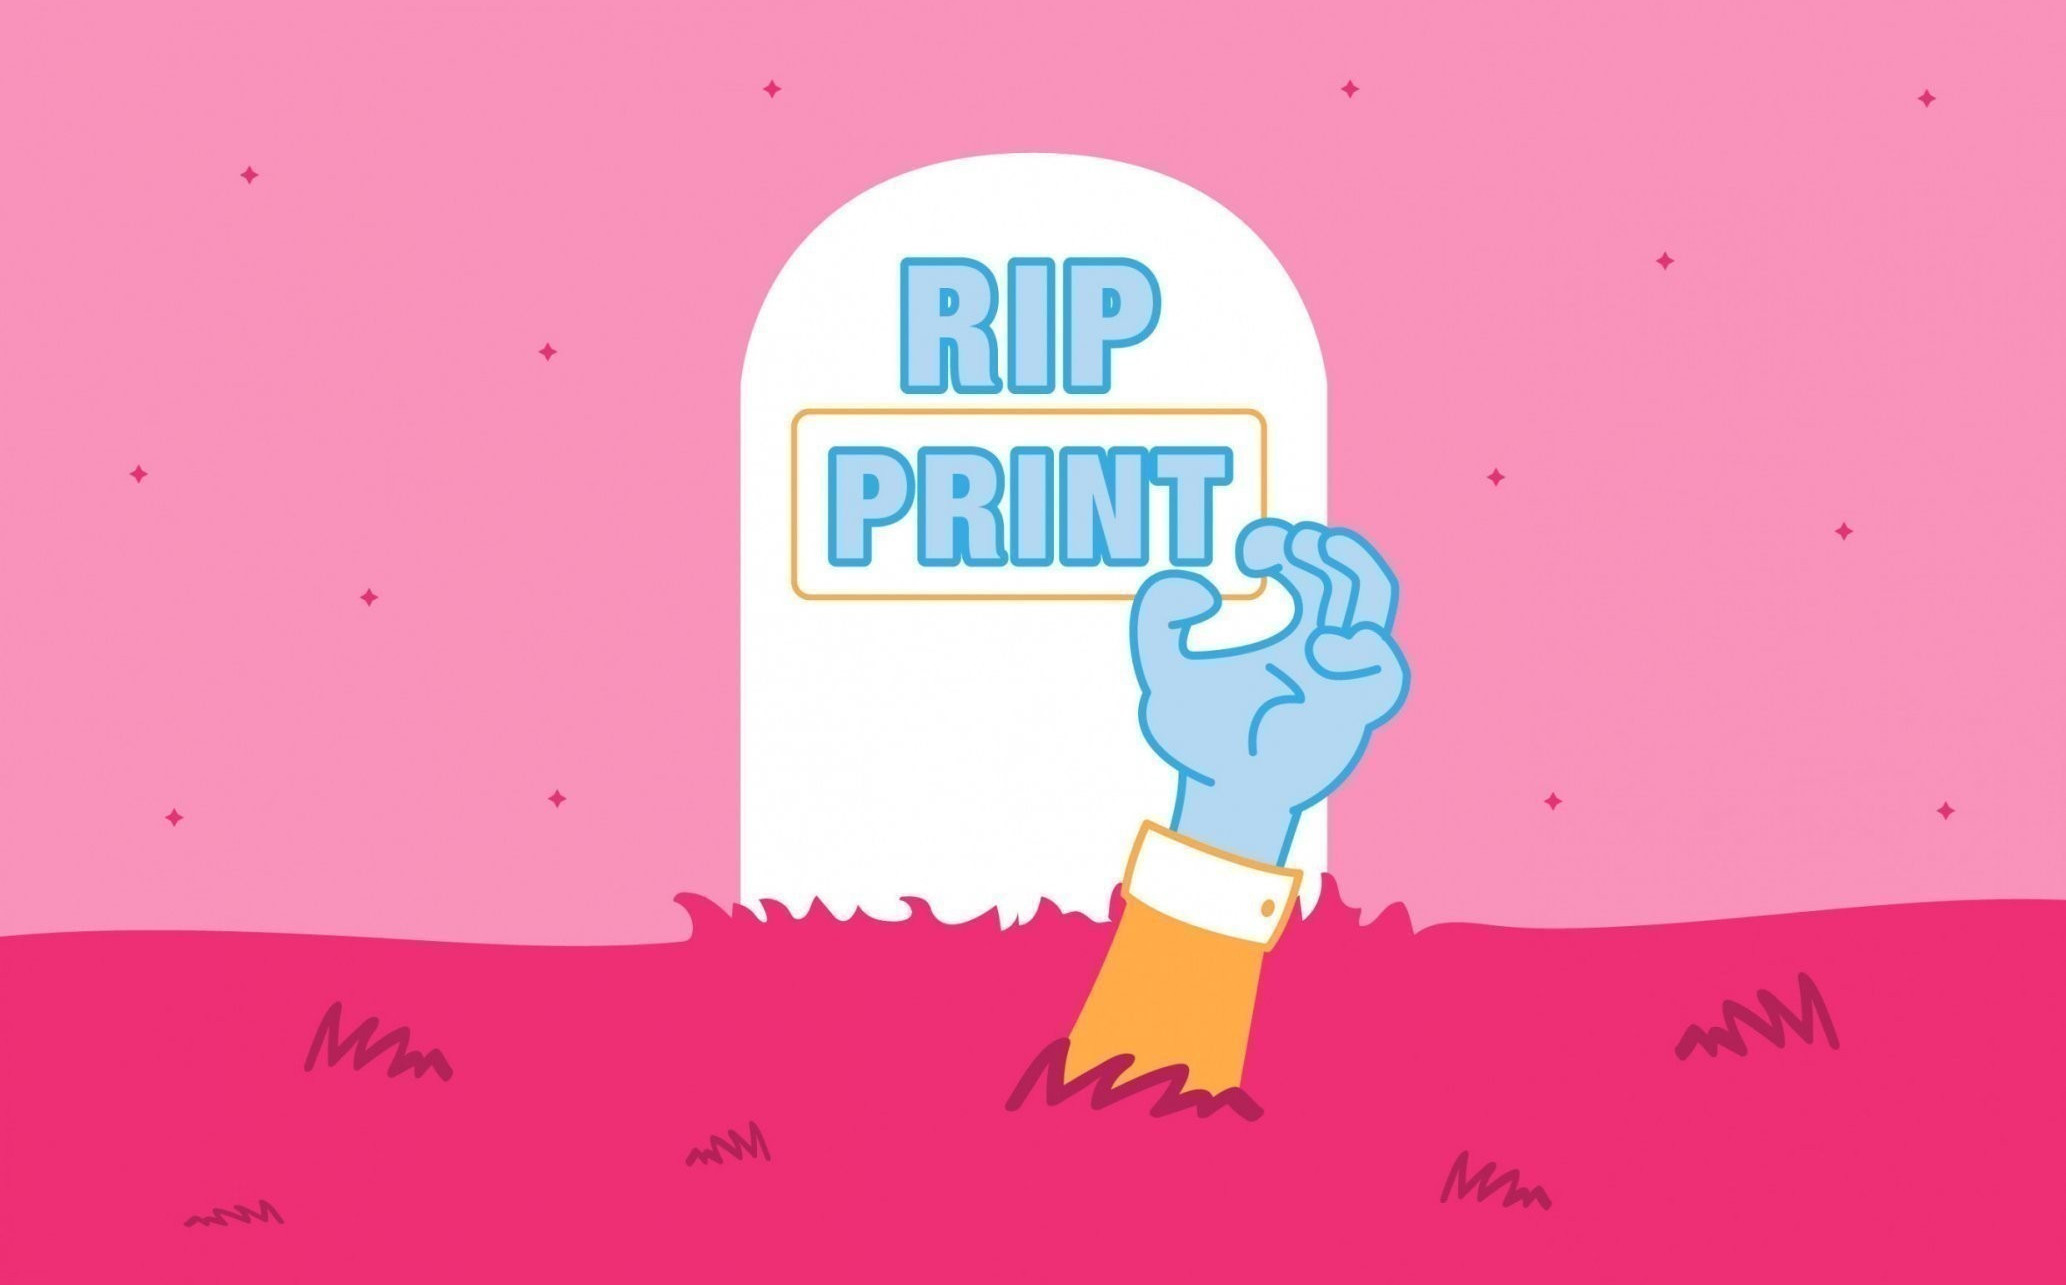 print is dead